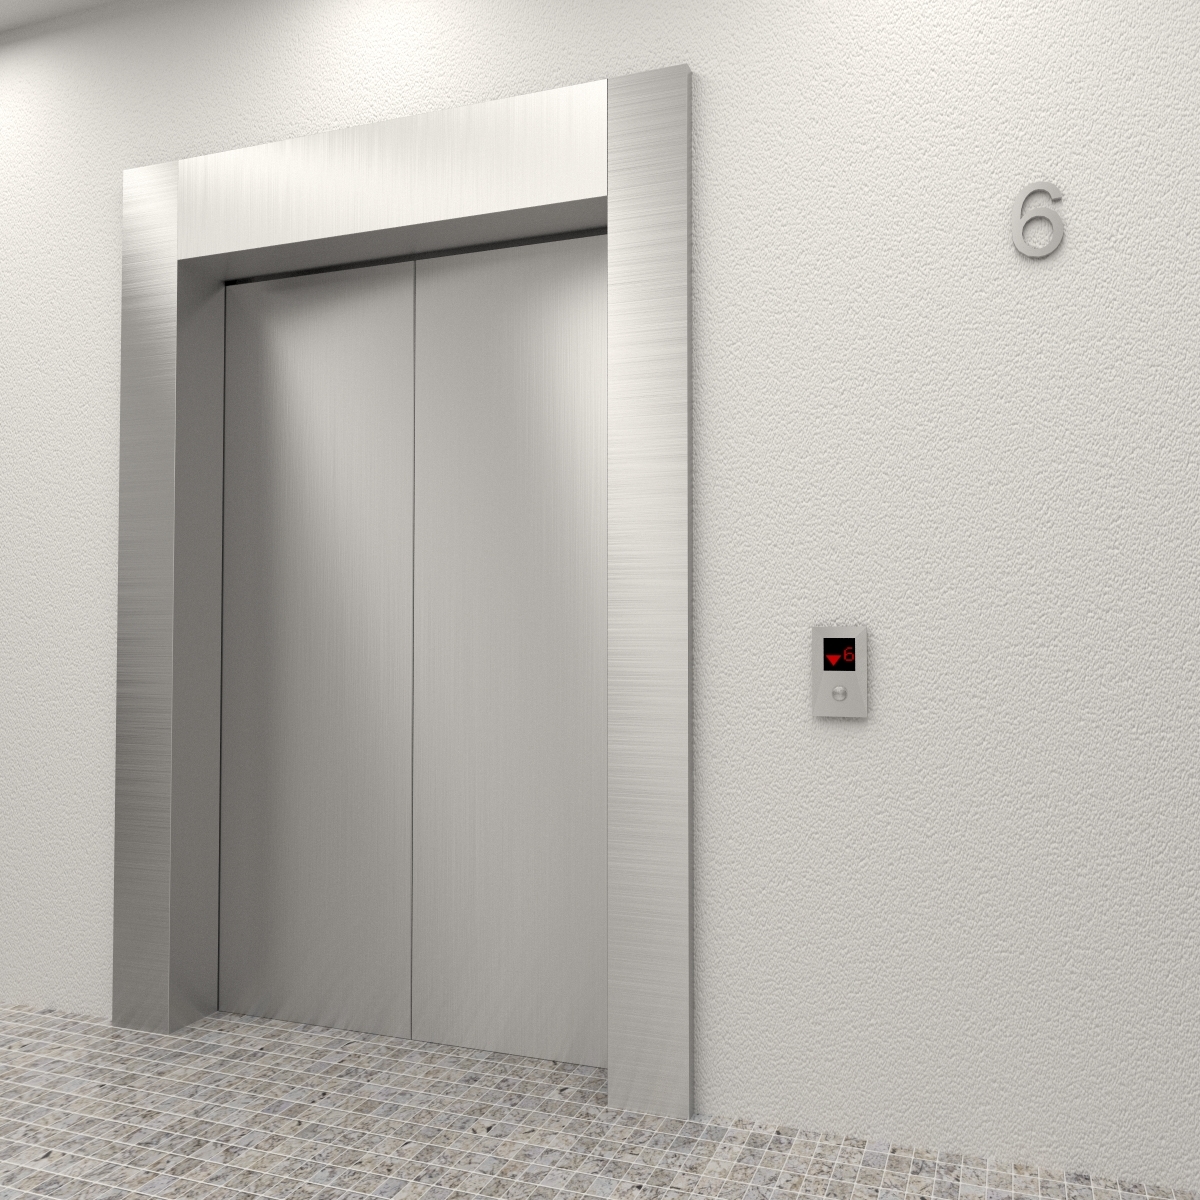 Светильники для лифта Отис. Питерские лифт Отис 2023. Макет лифта. Отис 3д модель.